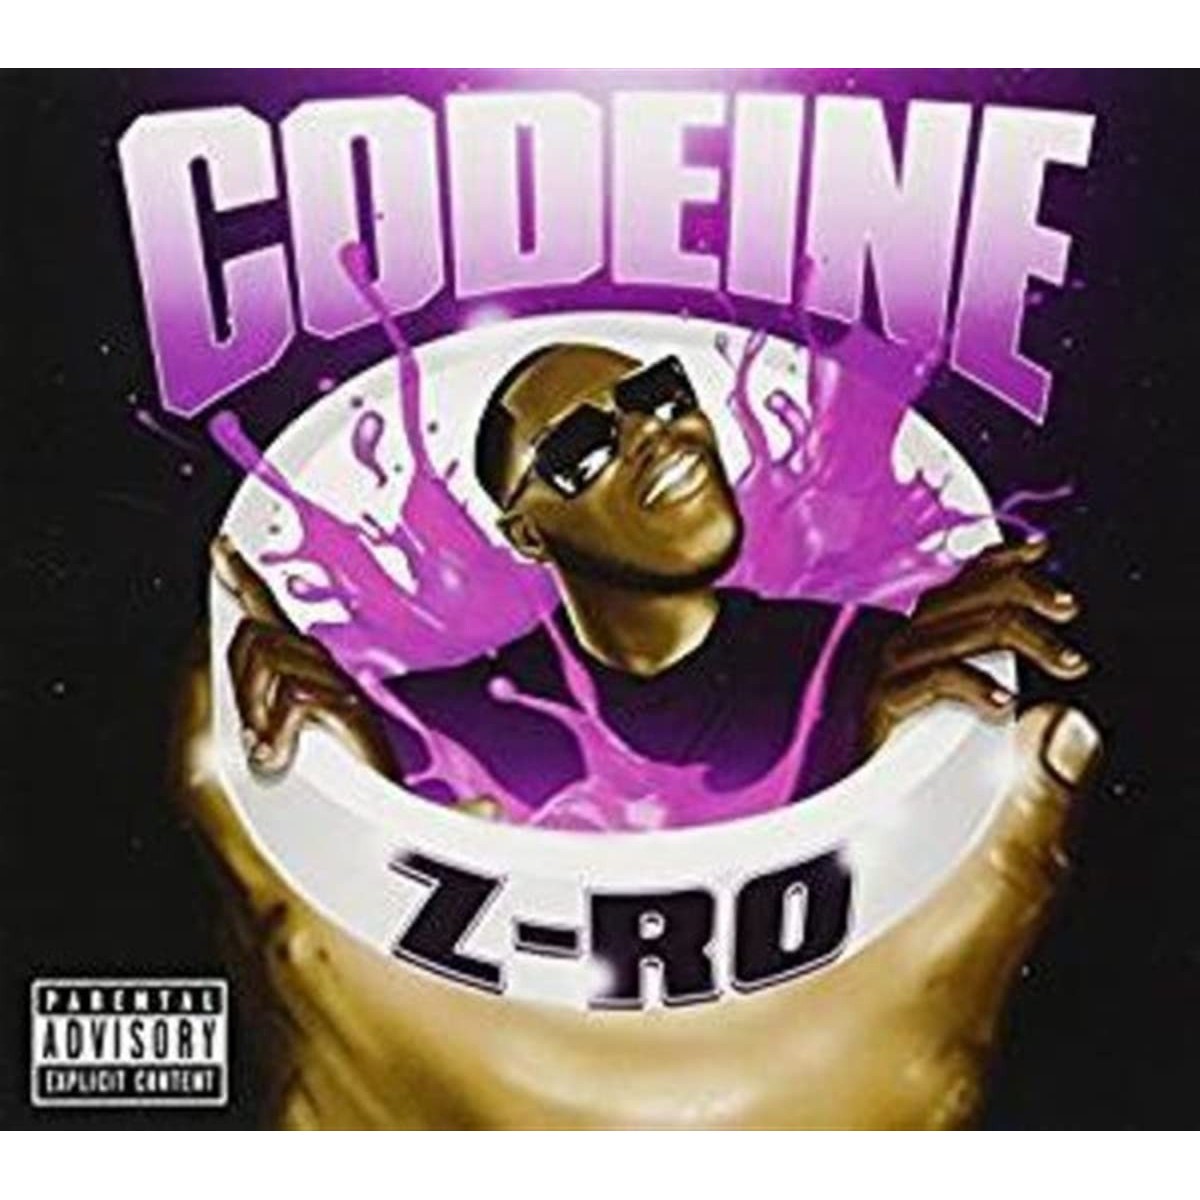 Z-Ro - Codeine